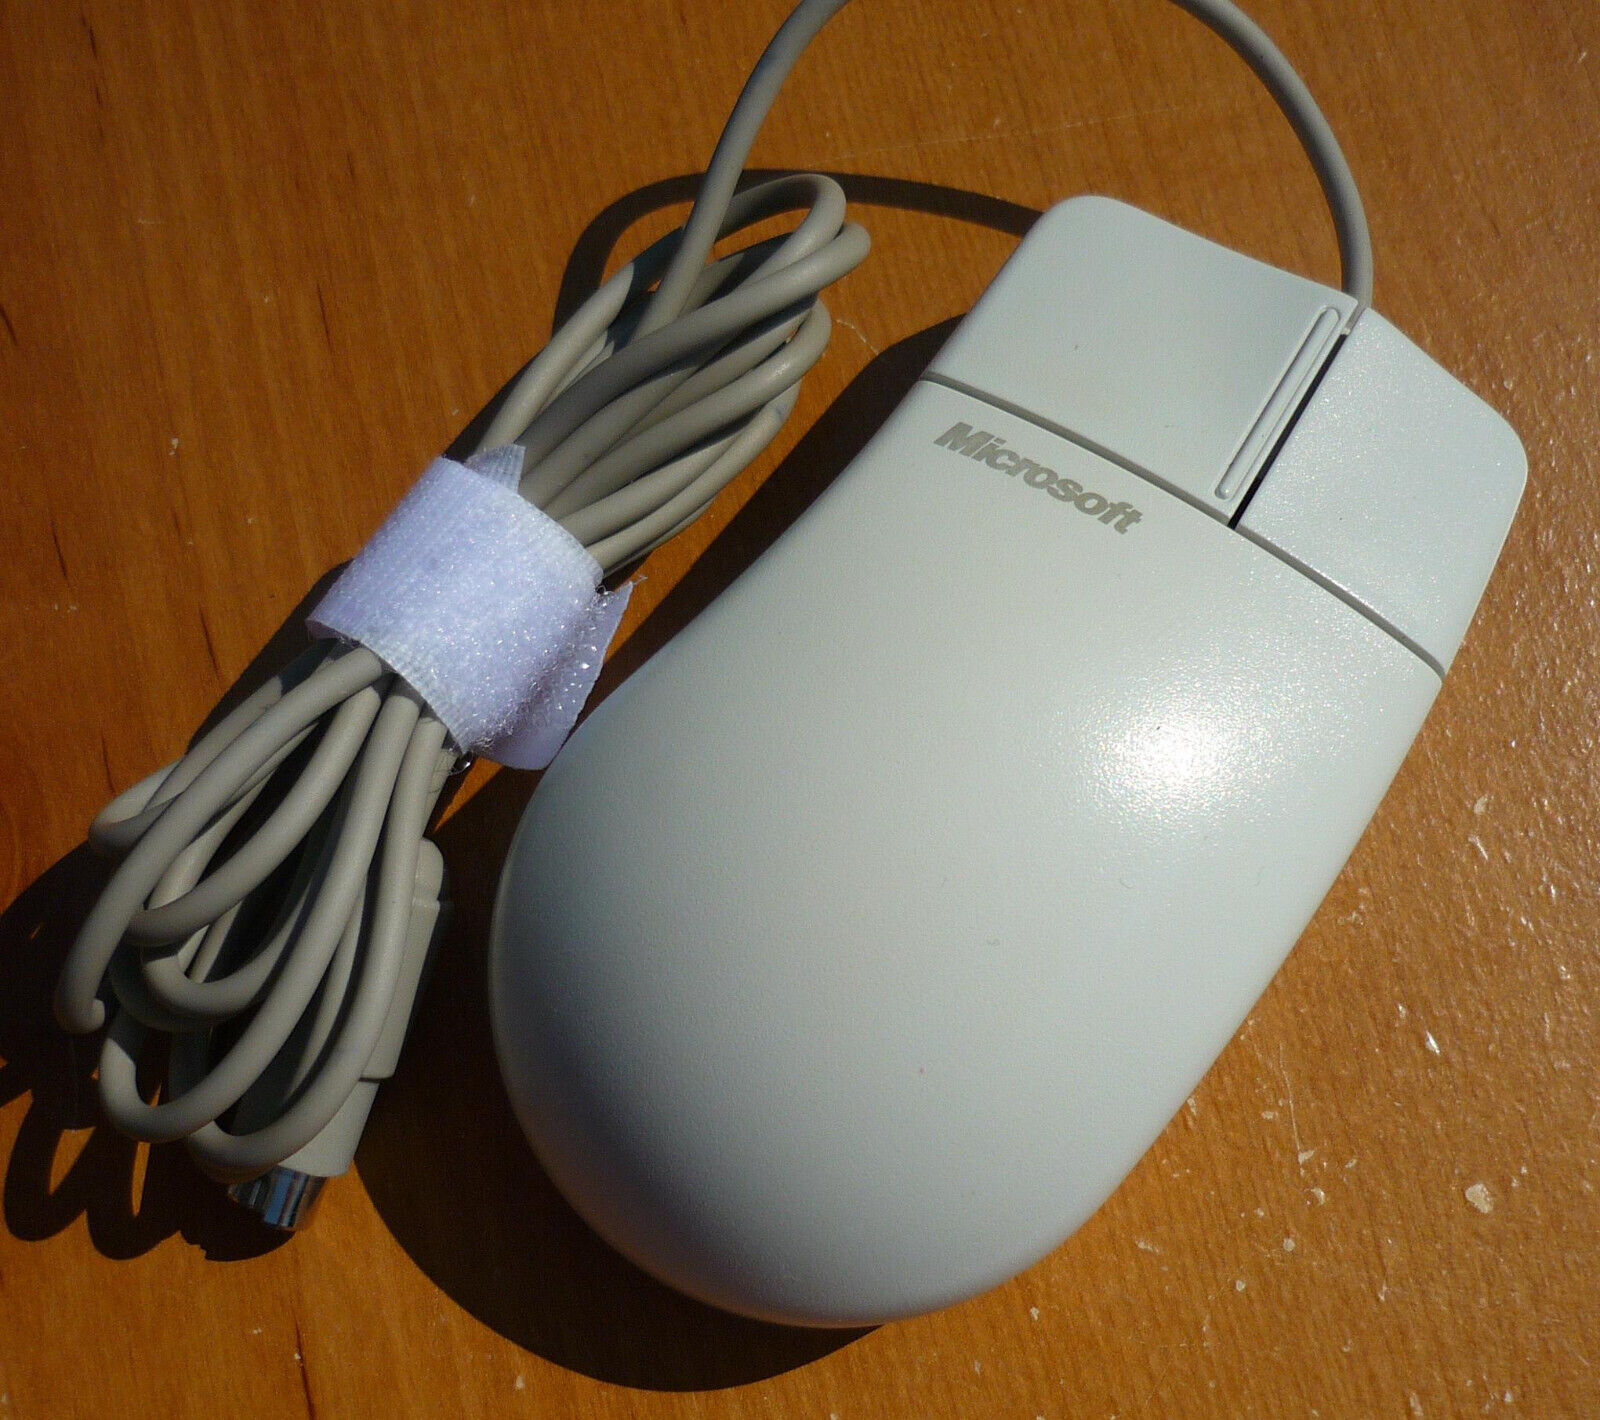 Vintage Microsoft Mouse Port Compatible Mouse 2.0A 58269 2-Button PS/2 EXC COND